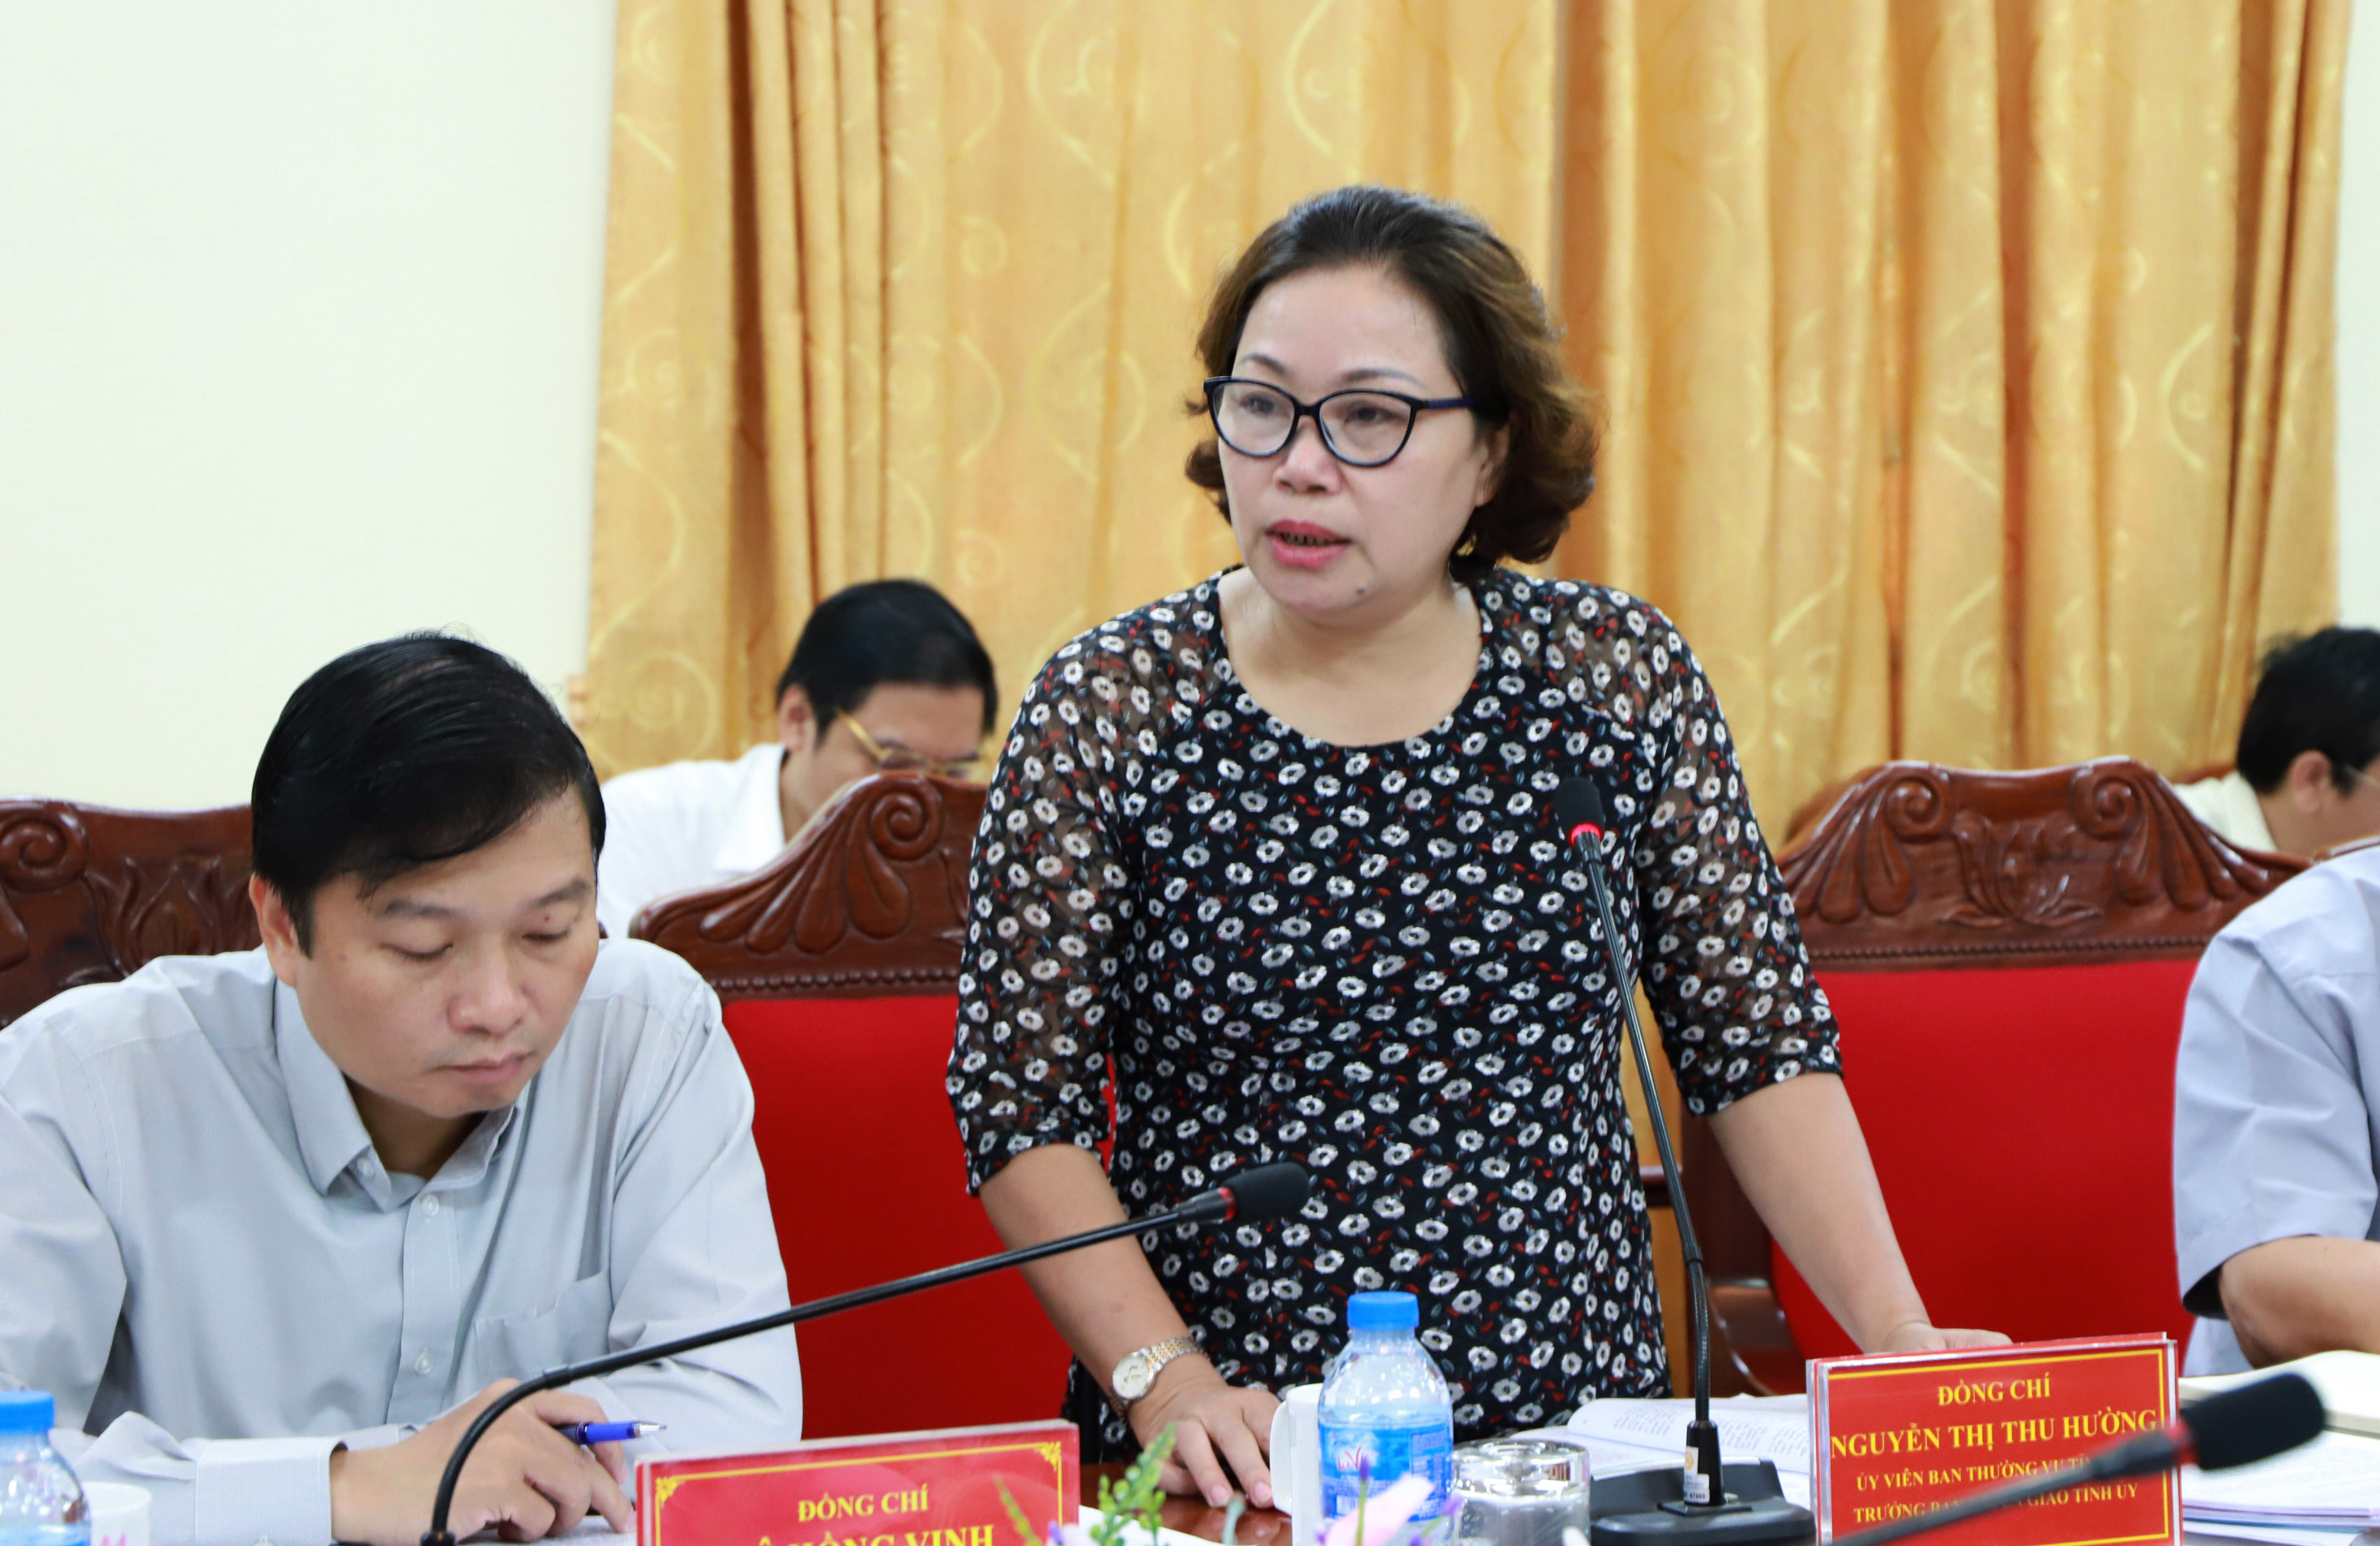 Đồng chí Nguyễn Thị Thu Hường - Ủy viên Ban Thường vụ, Trưởng ban Tuyên giáo Tỉnh ủy phát biểu tại cuộc làm việc. Ảnh: Thành Duy